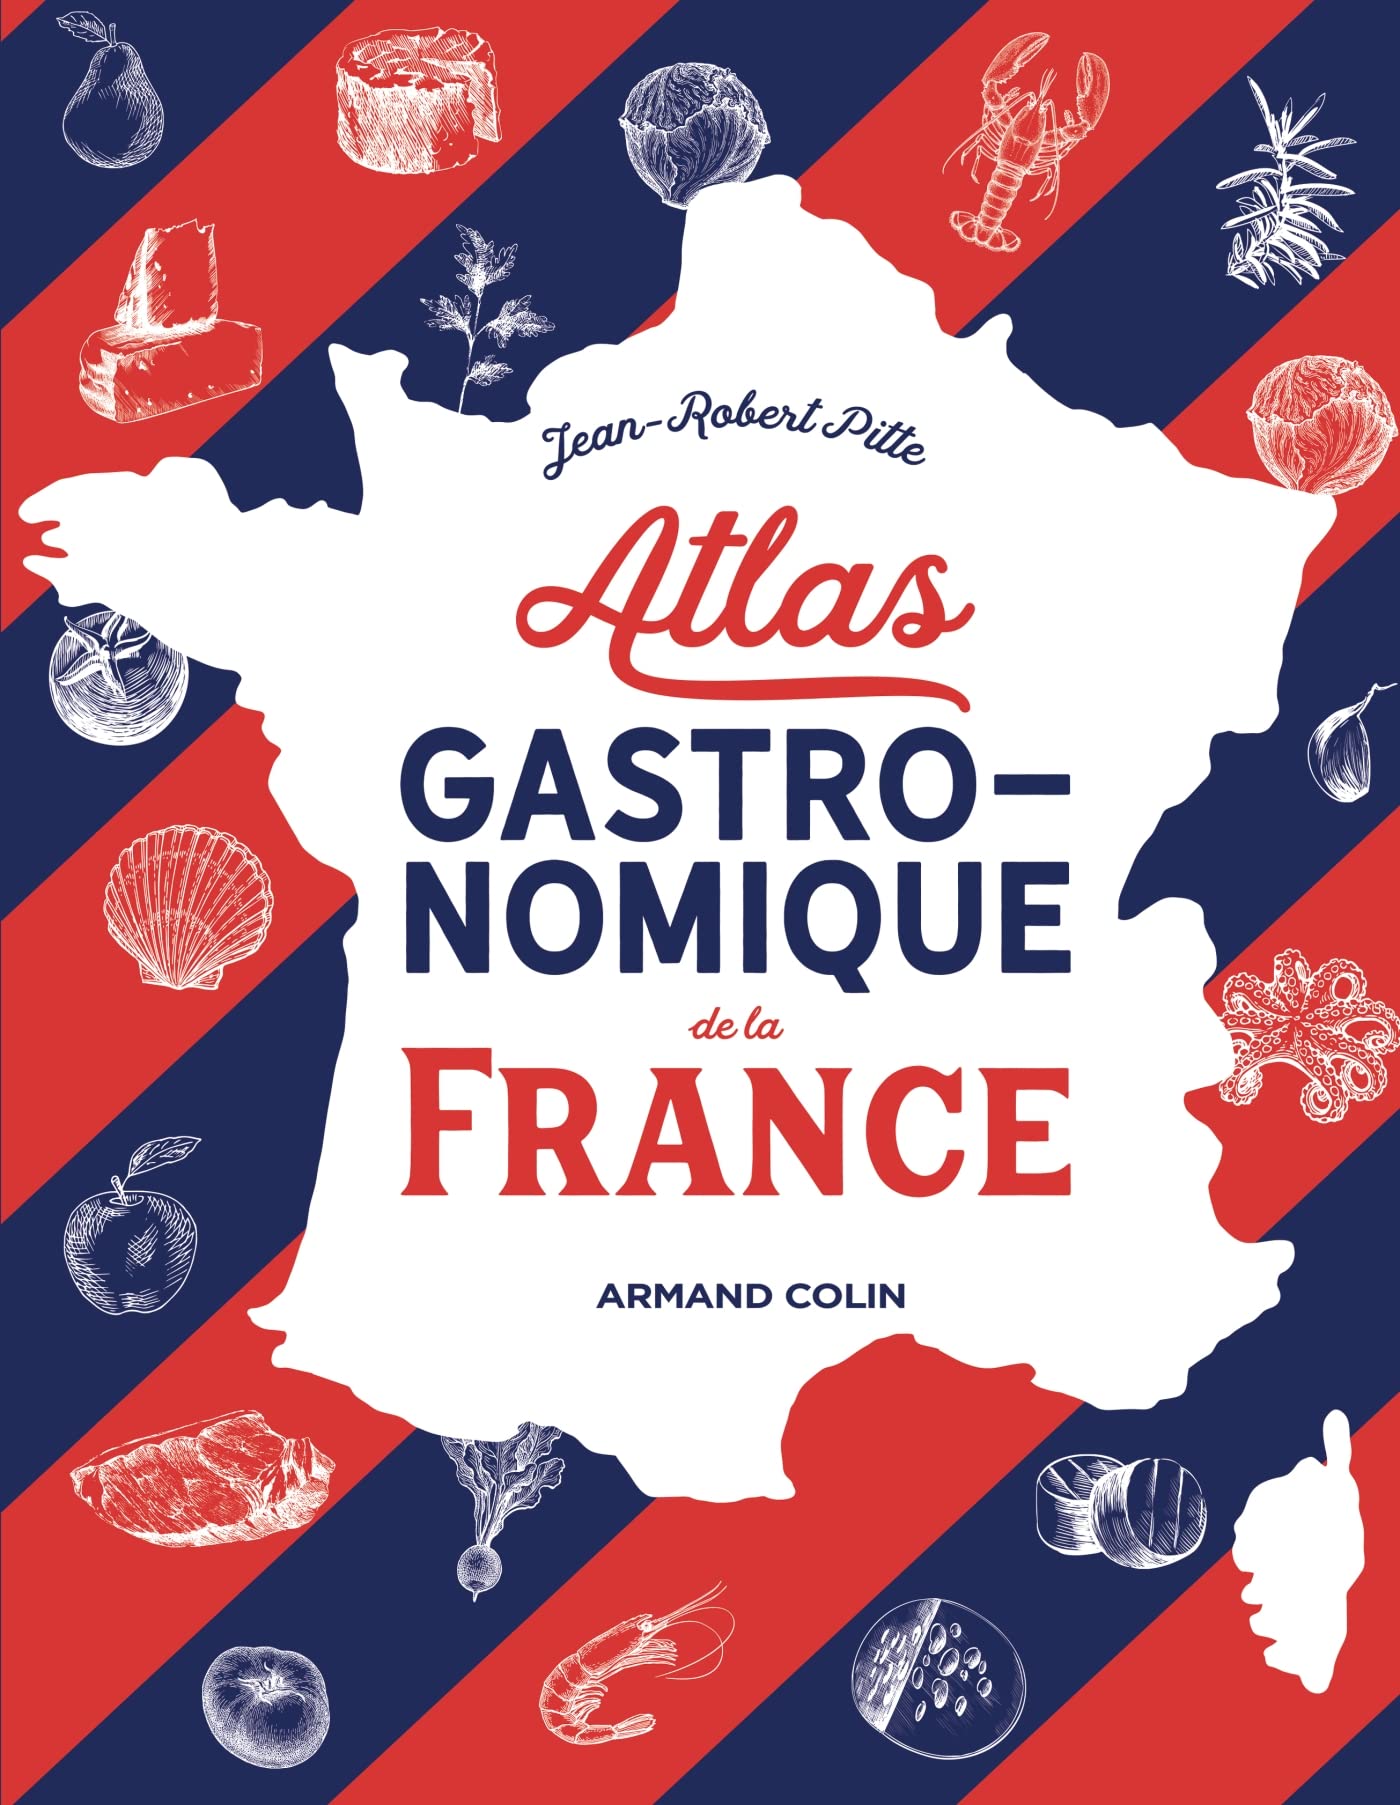 Atlas gastronomique de la France